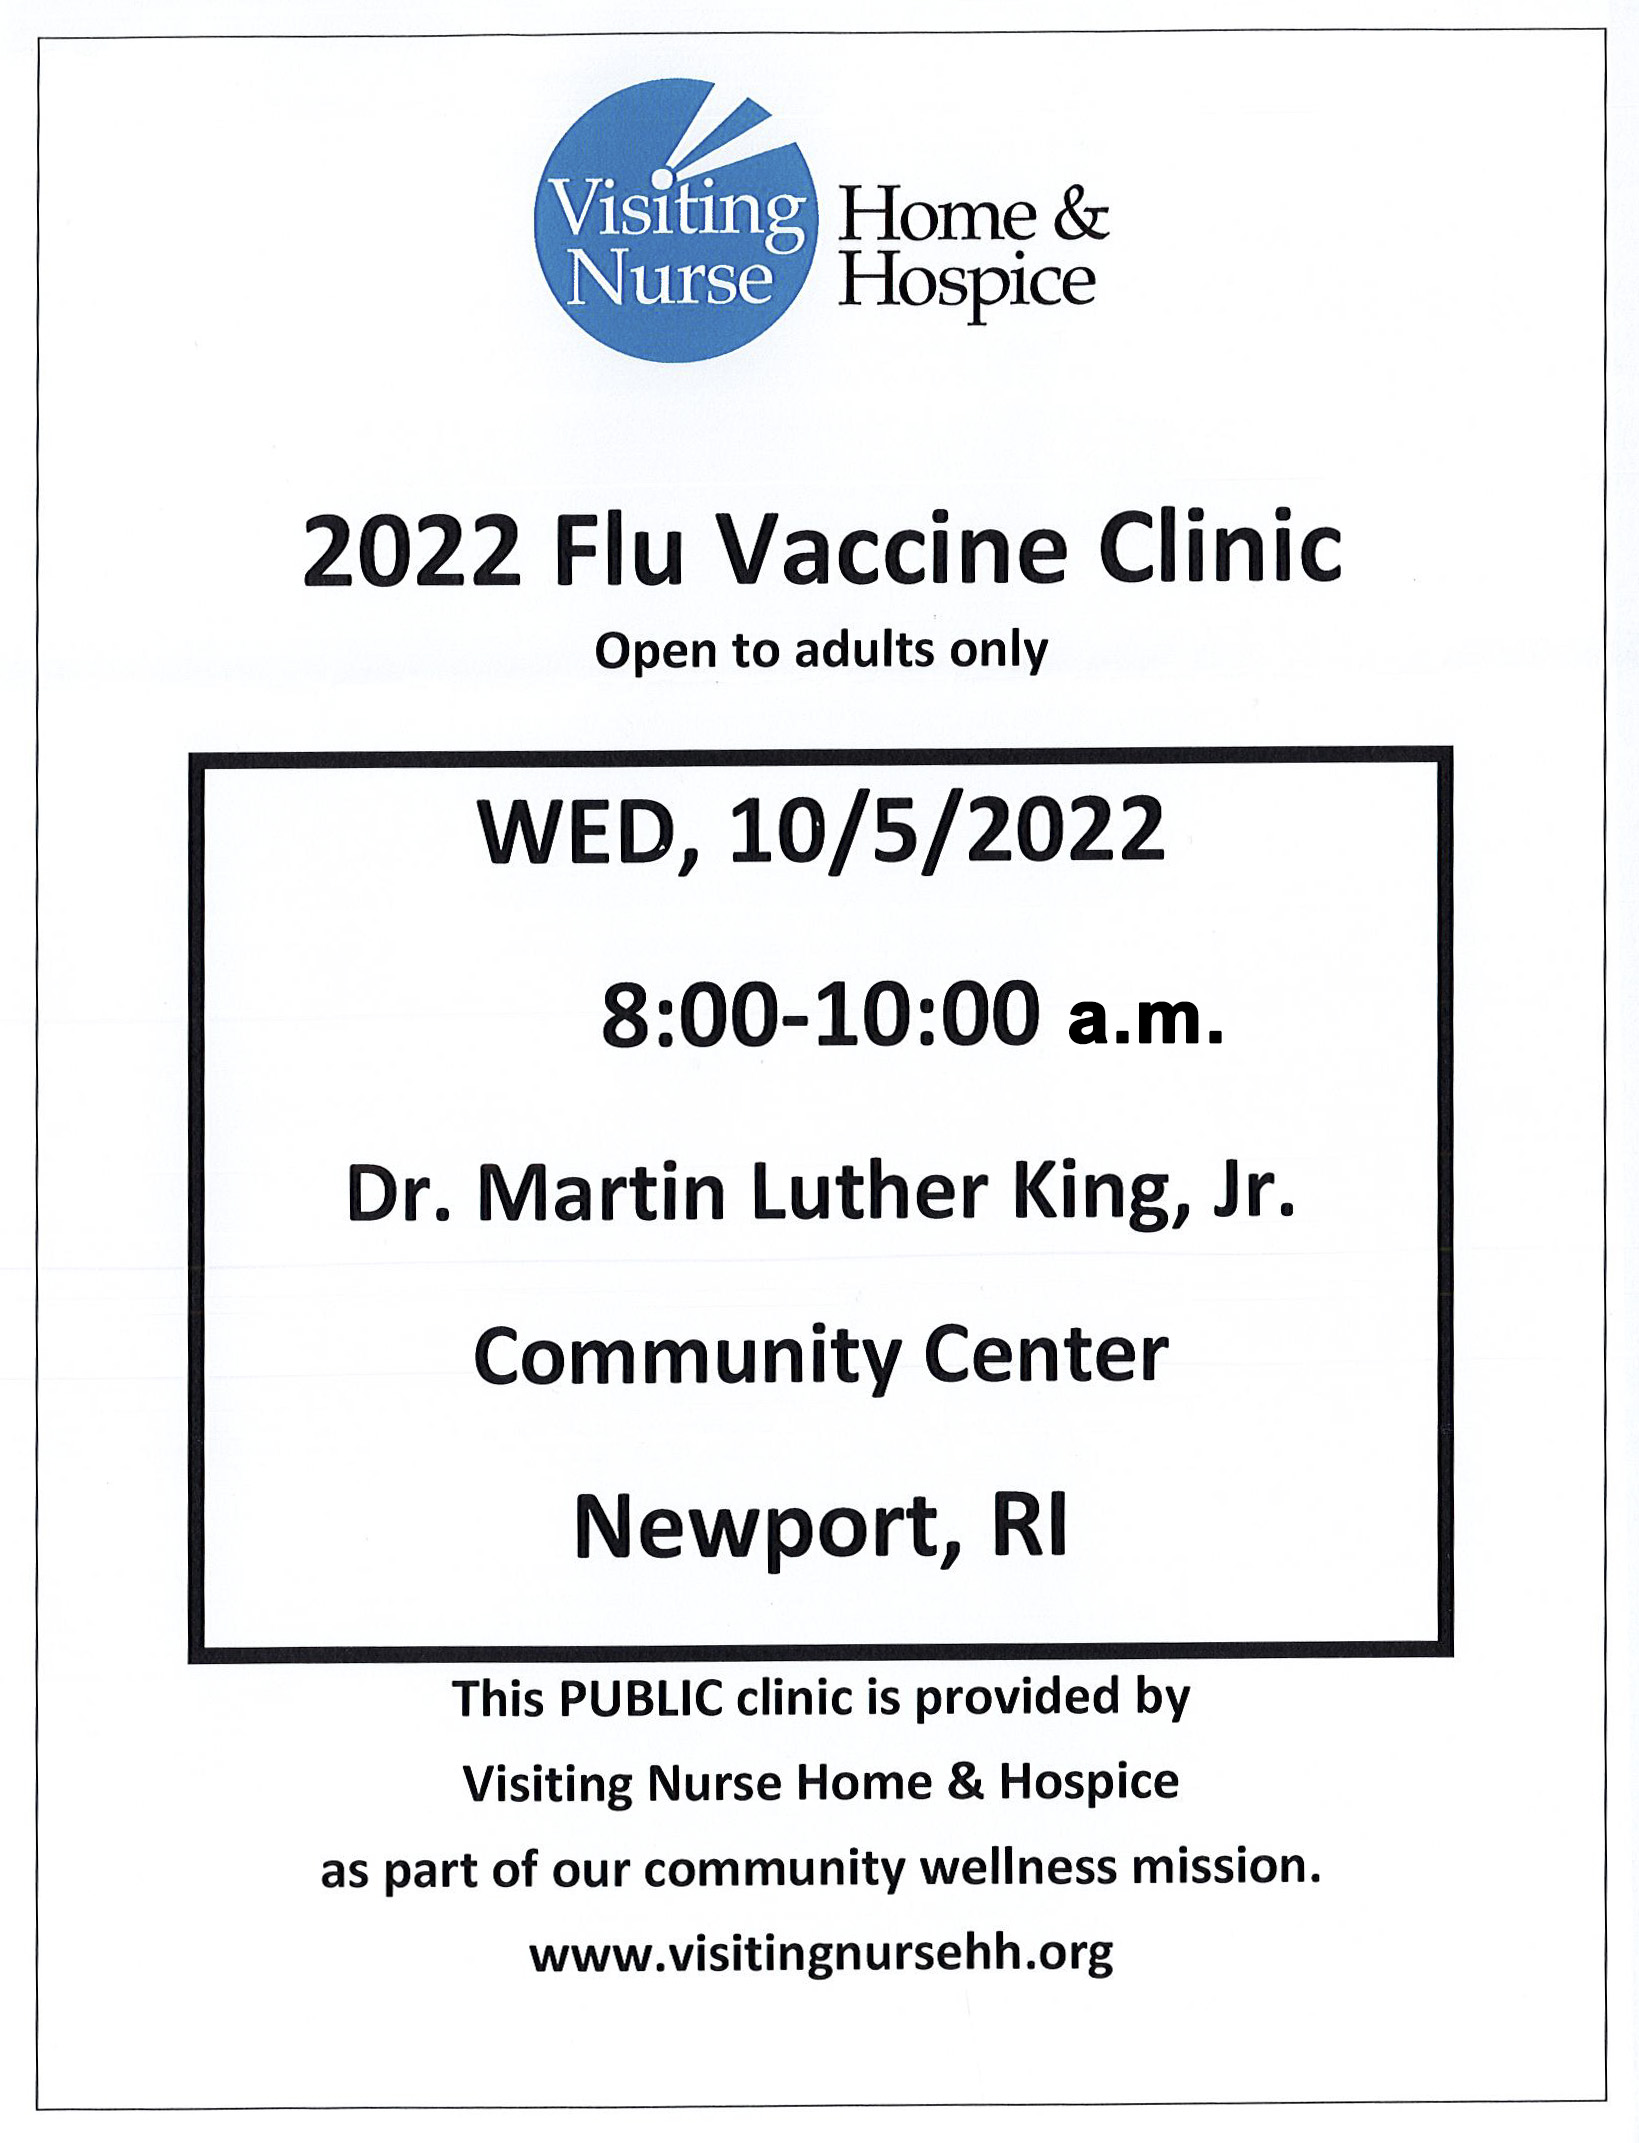 Flu Vaccine Clinic